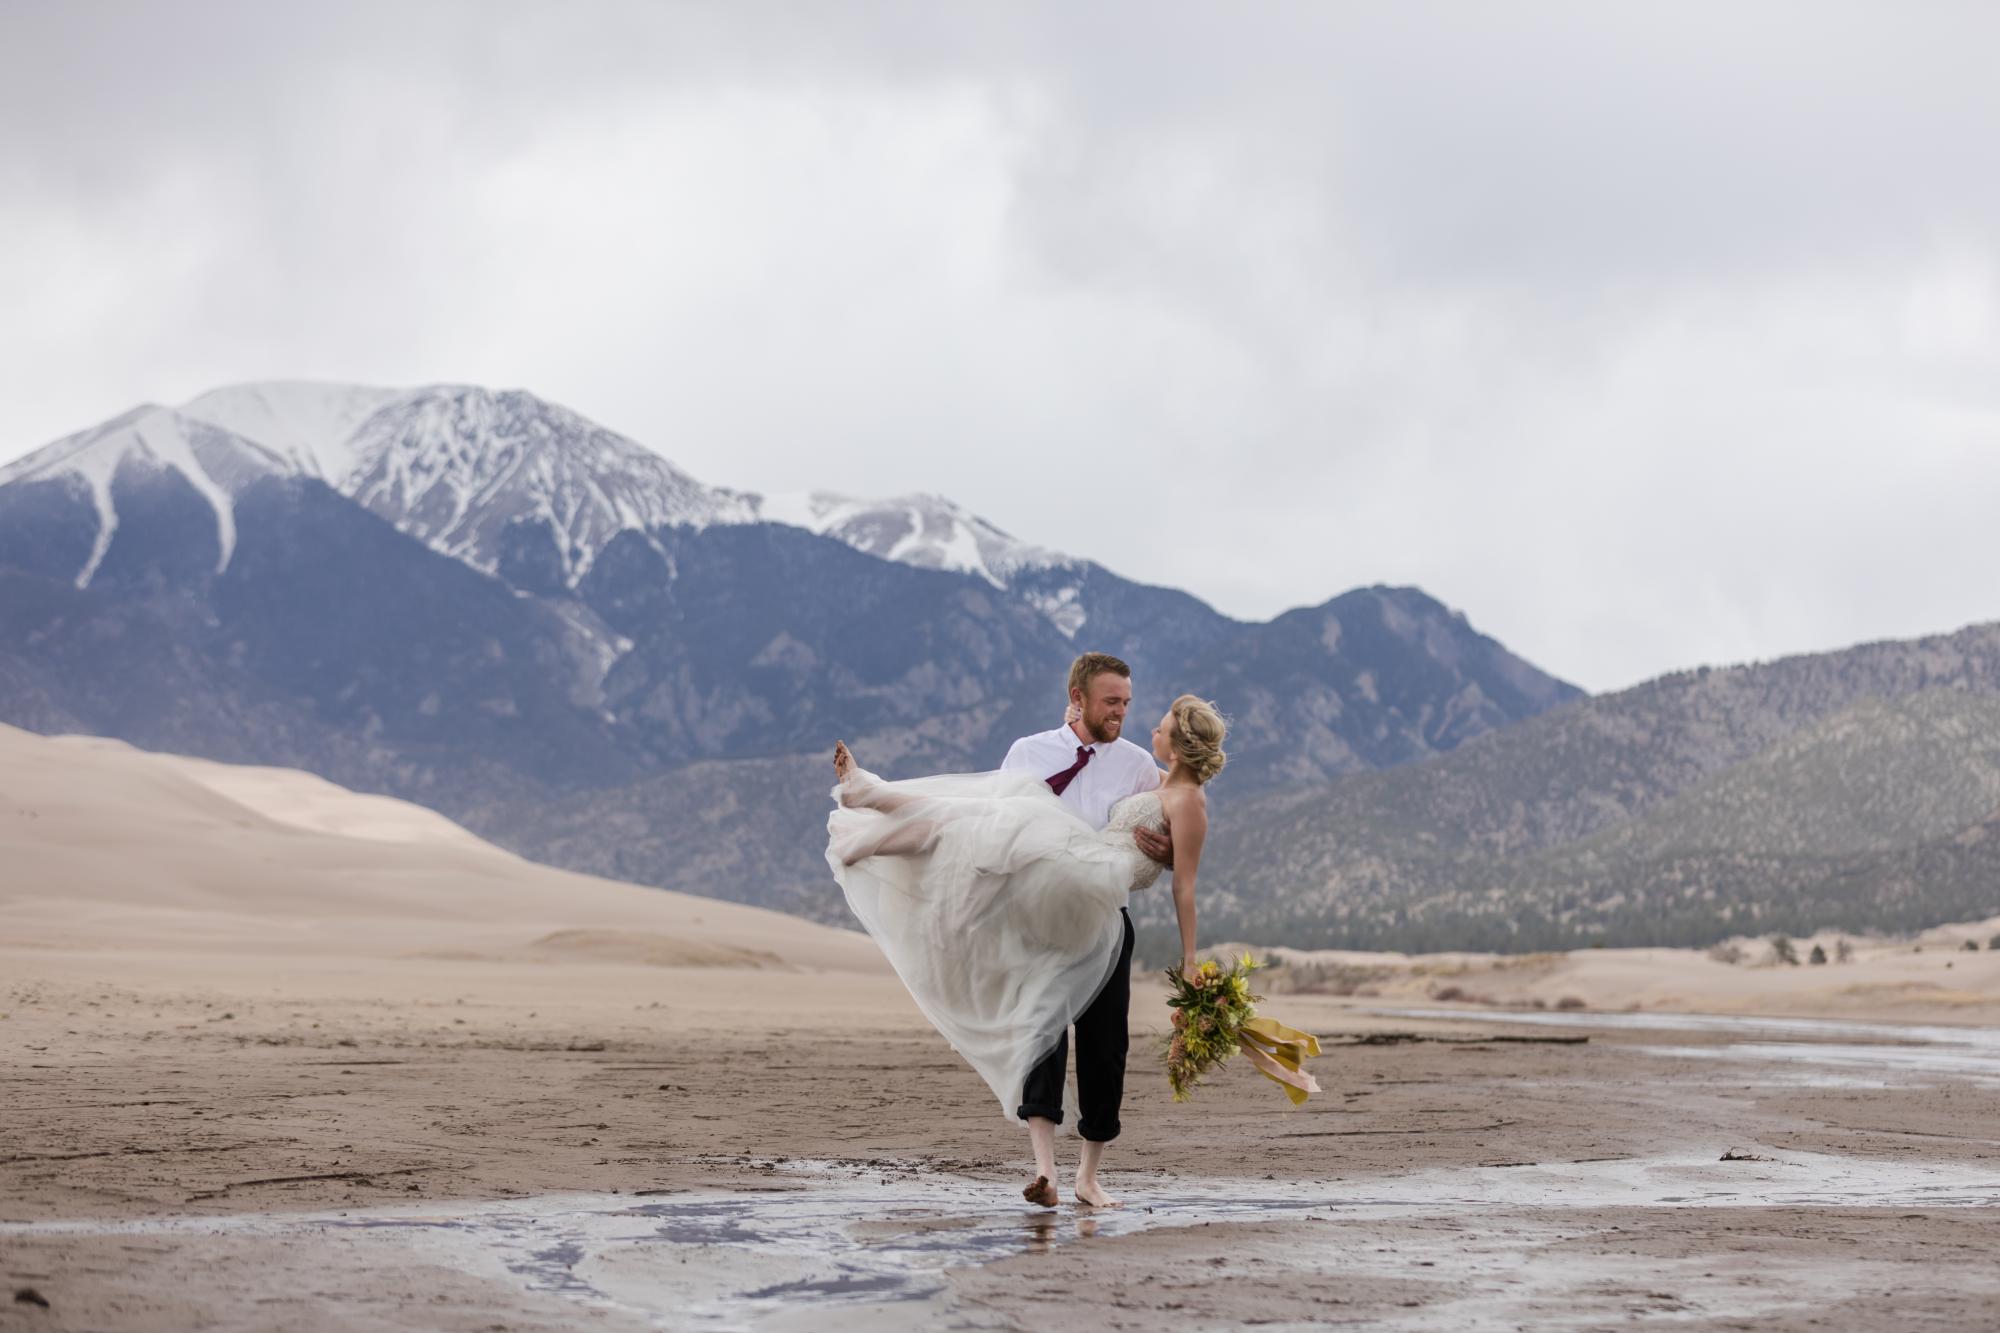 Groom picks up bride on sand dunes